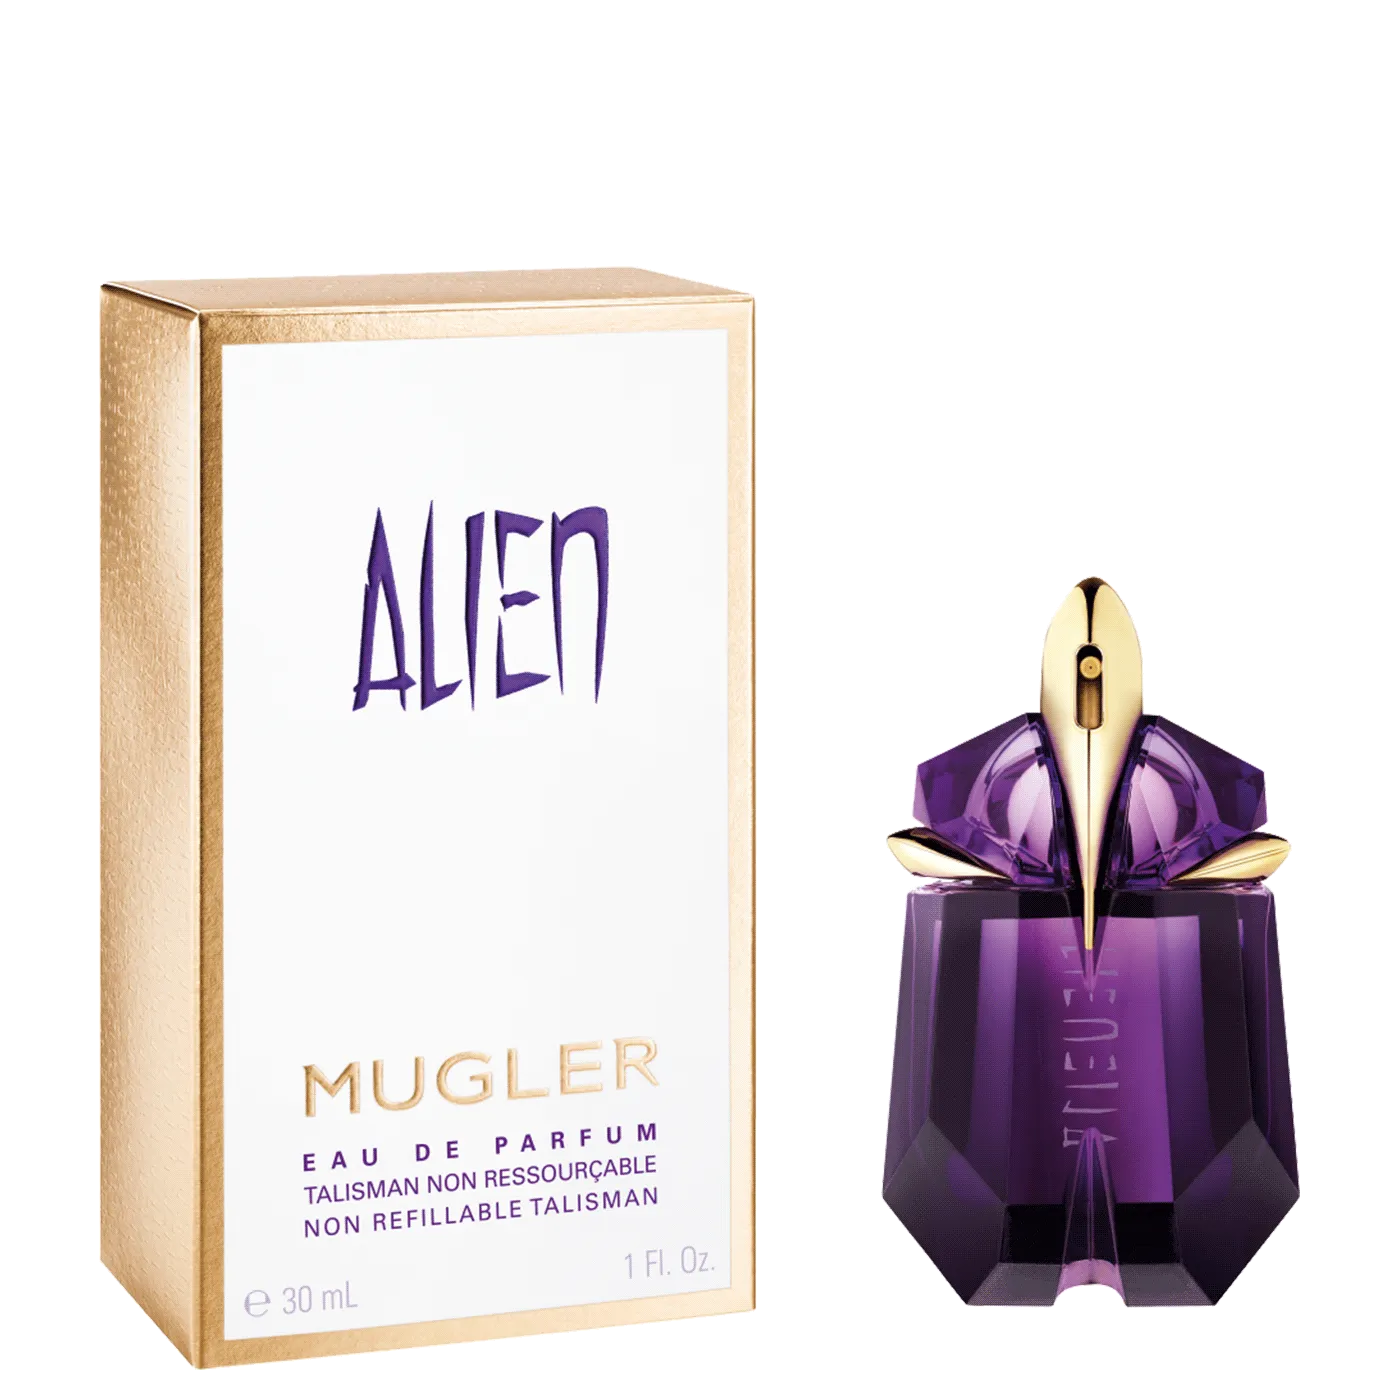 Mugler Alien Eau De Parfum Non Refillable